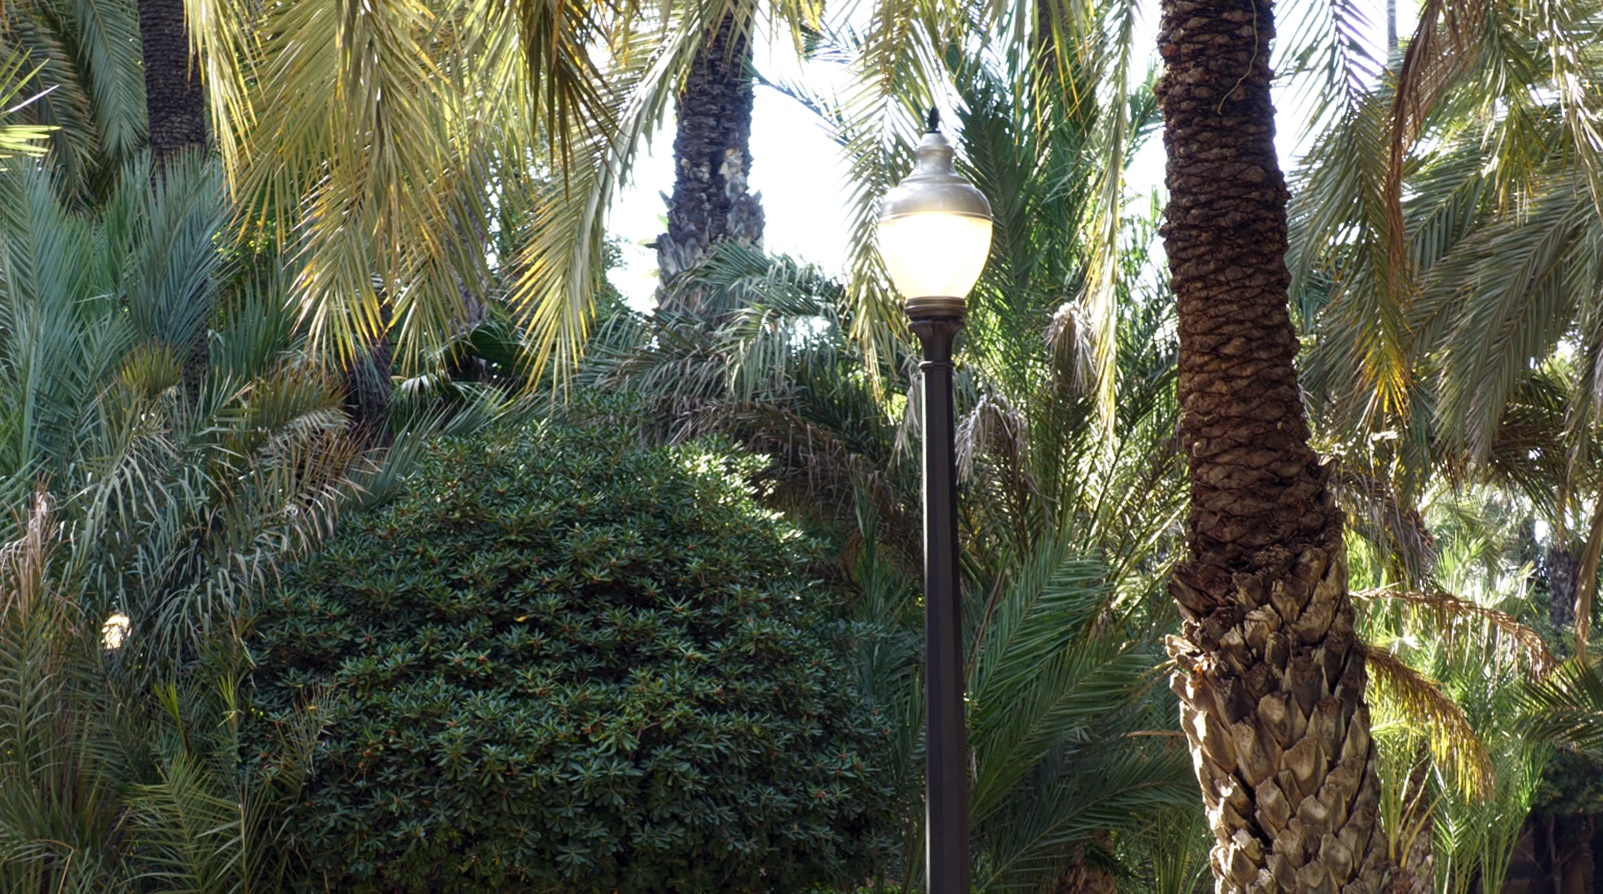 El Ayuntamiento de Elche renueva 200 luminarias en el Parque Municipal y Santa Ana con tecnología LED